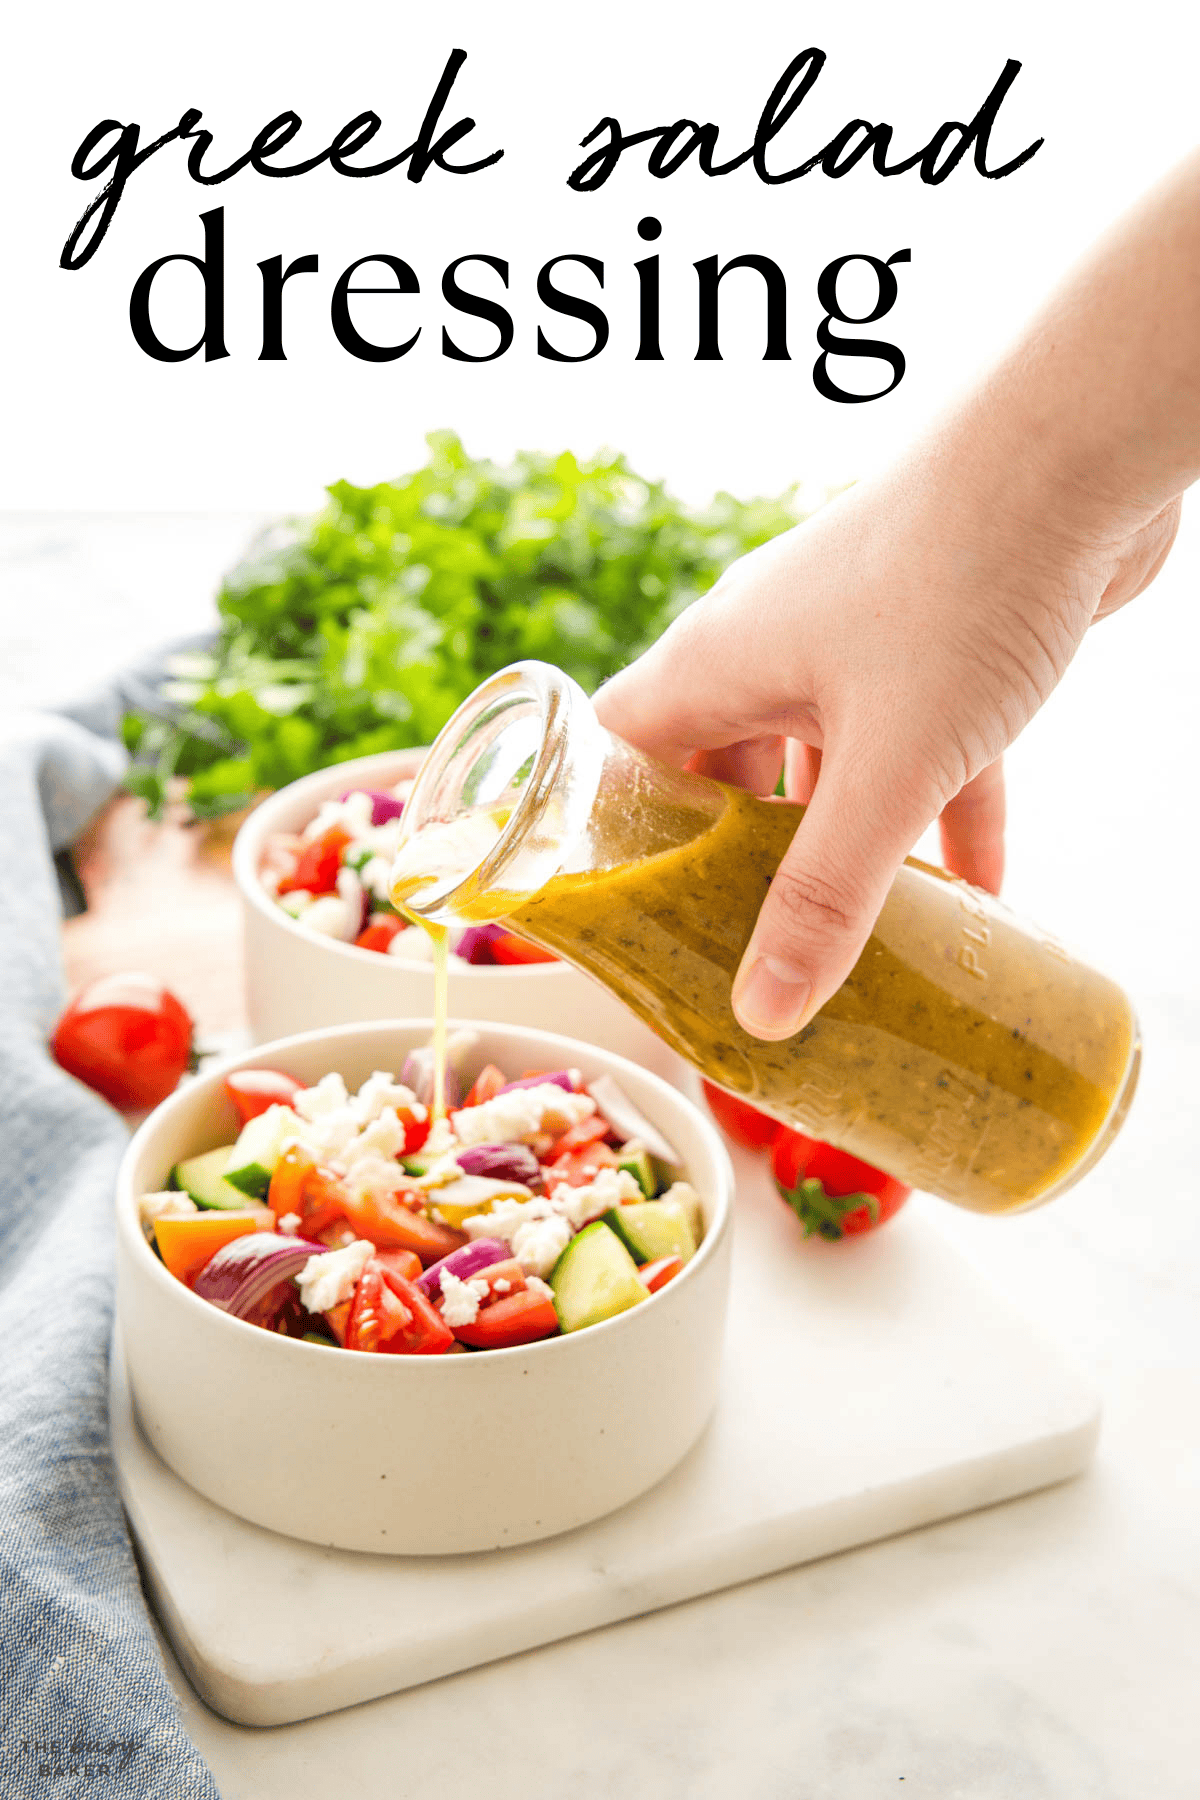 Greek salad dressing recipe